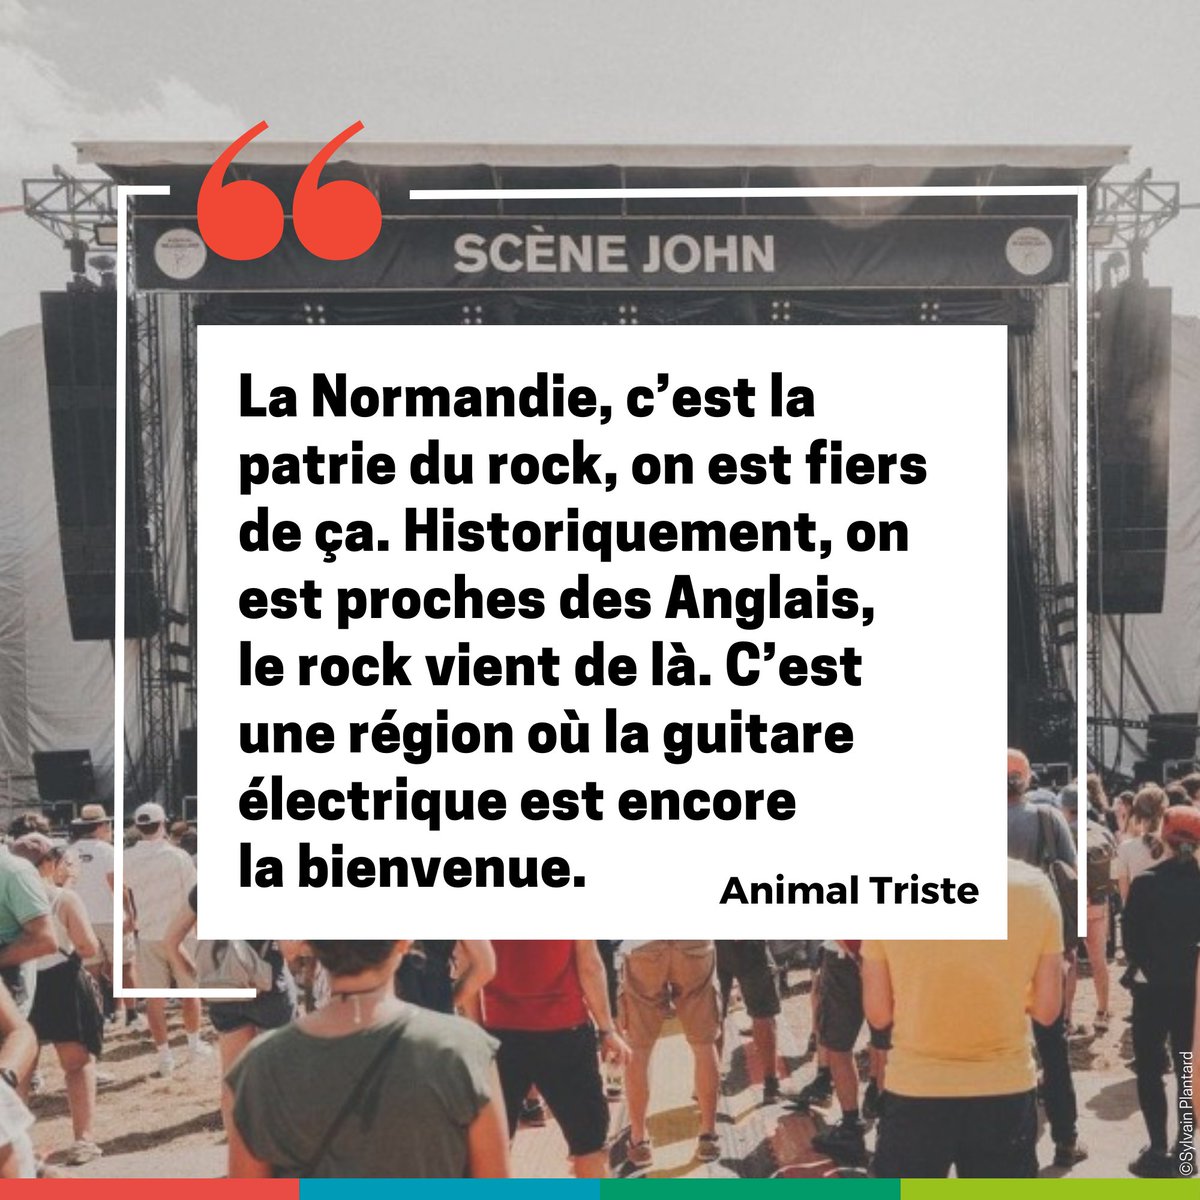 ⏰ 1 mois après Beauregard ✨Le festival a mis la scène normande à l’honneur avec Cemented Minds et Animal Triste Plus d'infos ➡ choisirlanormandie.fr/les-normands-f…⬅ #ChoisirlaNormandie #Normandie #Musique @FestBeauregard @bigbandcafe @le106